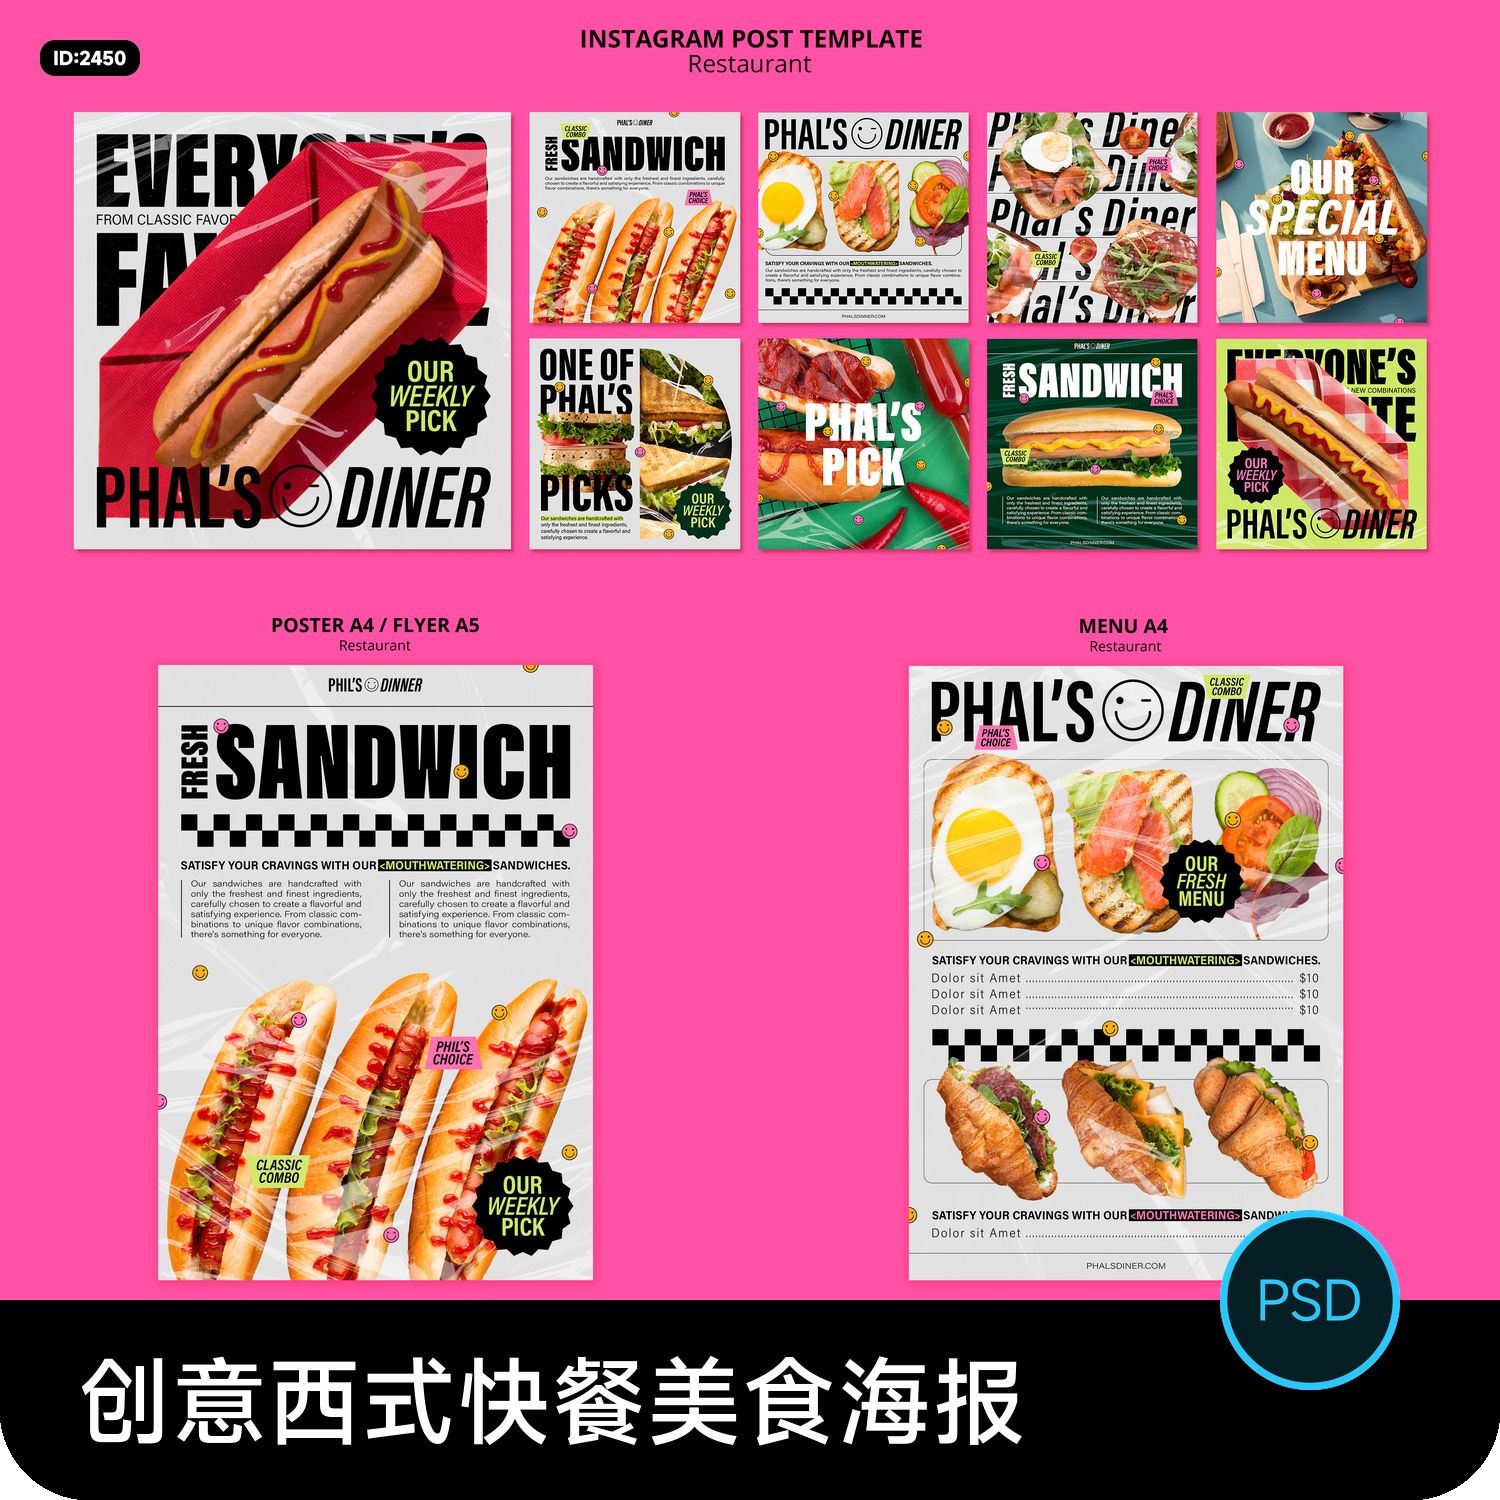 创意西式快餐汉堡热狗三明治美食海报菜单海报排版设计psd素材